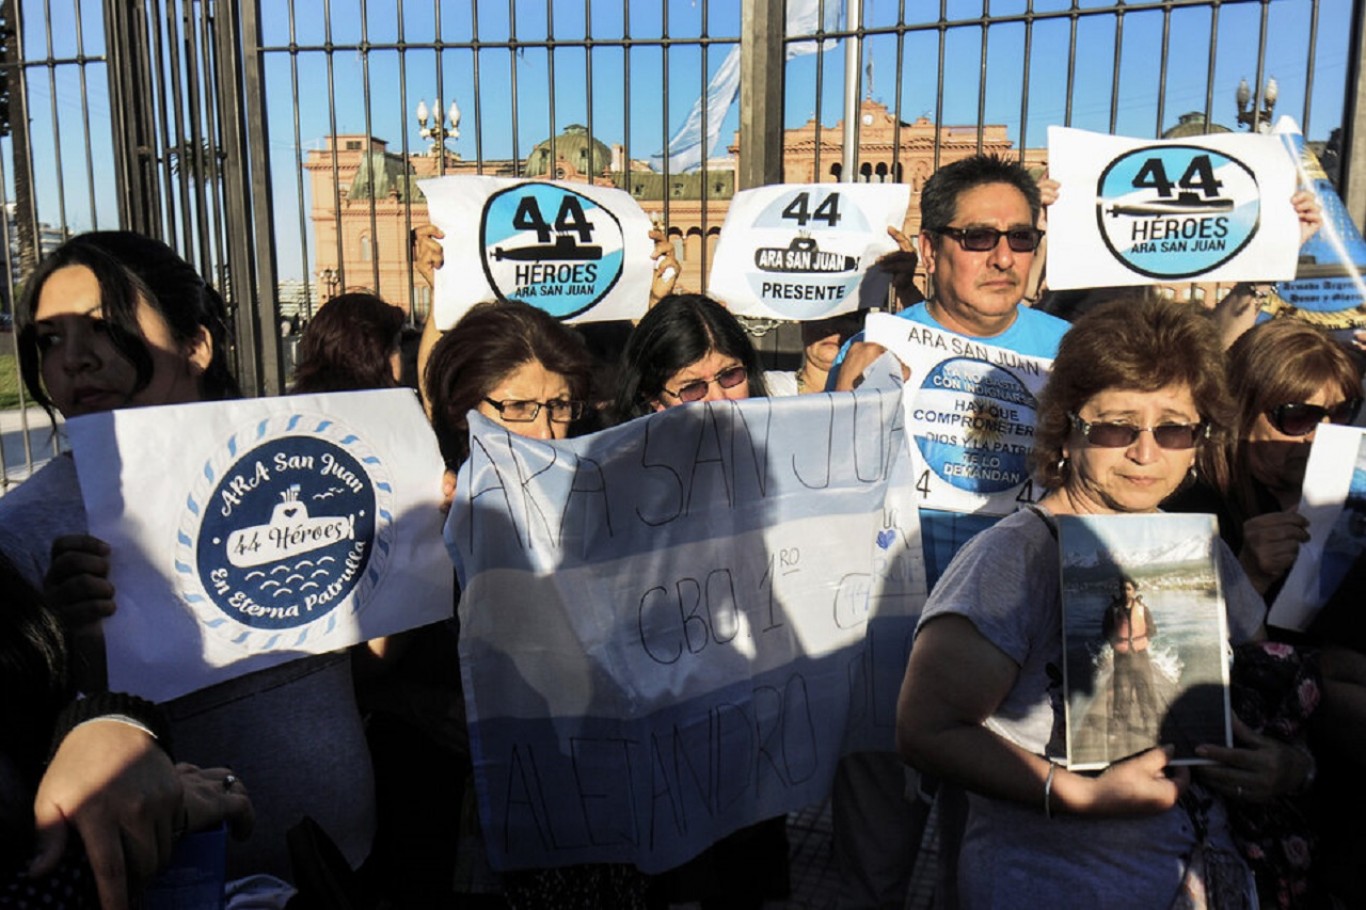 ARA San Juan: "Los responsables tienen poder y ponen trabas en la justicia"